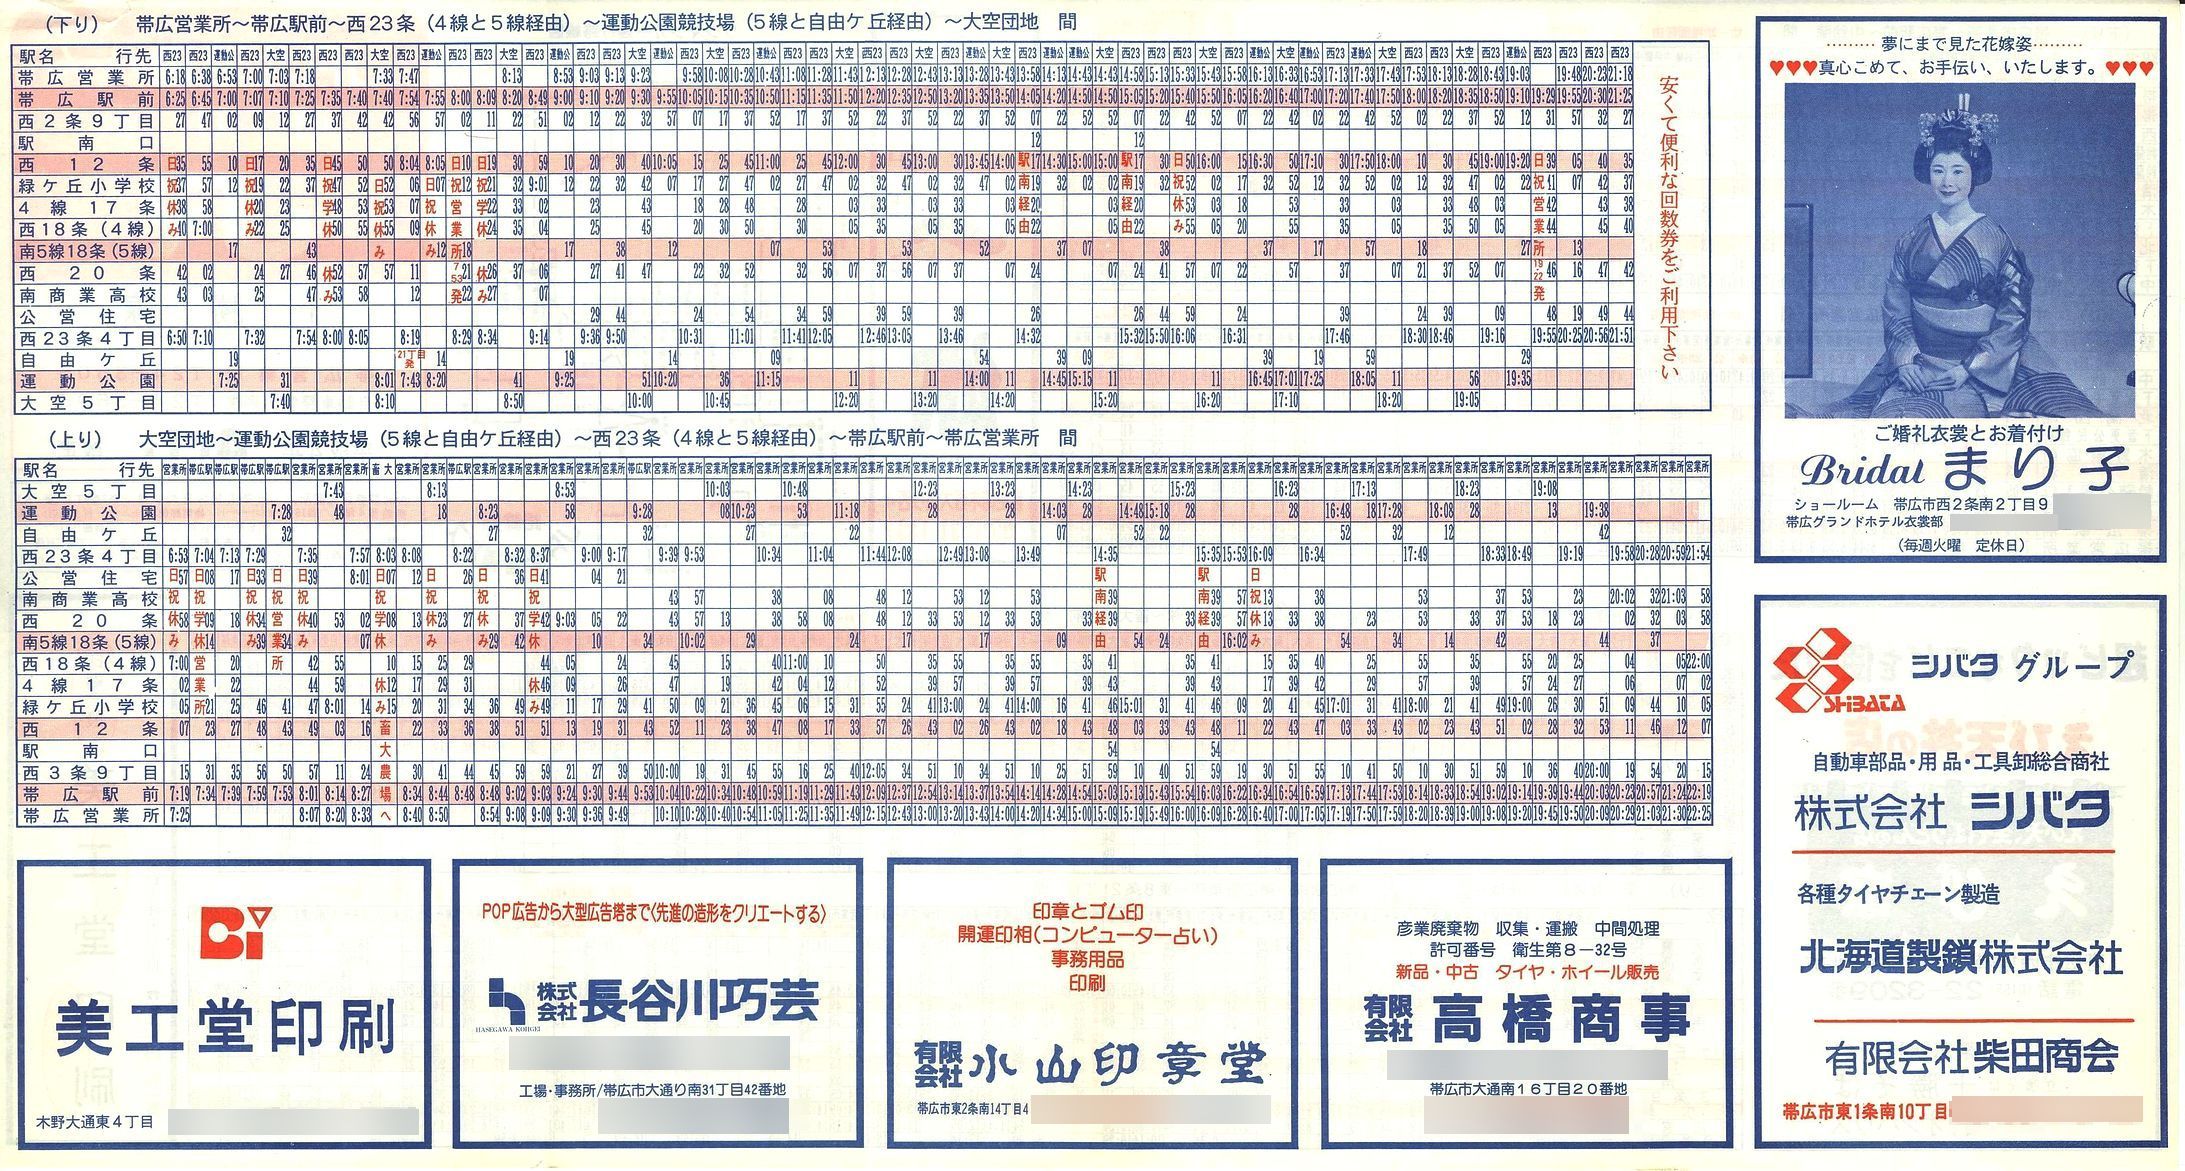 1992-04-01改正_ＪＲ北海道バス_十勝線時刻表裏面